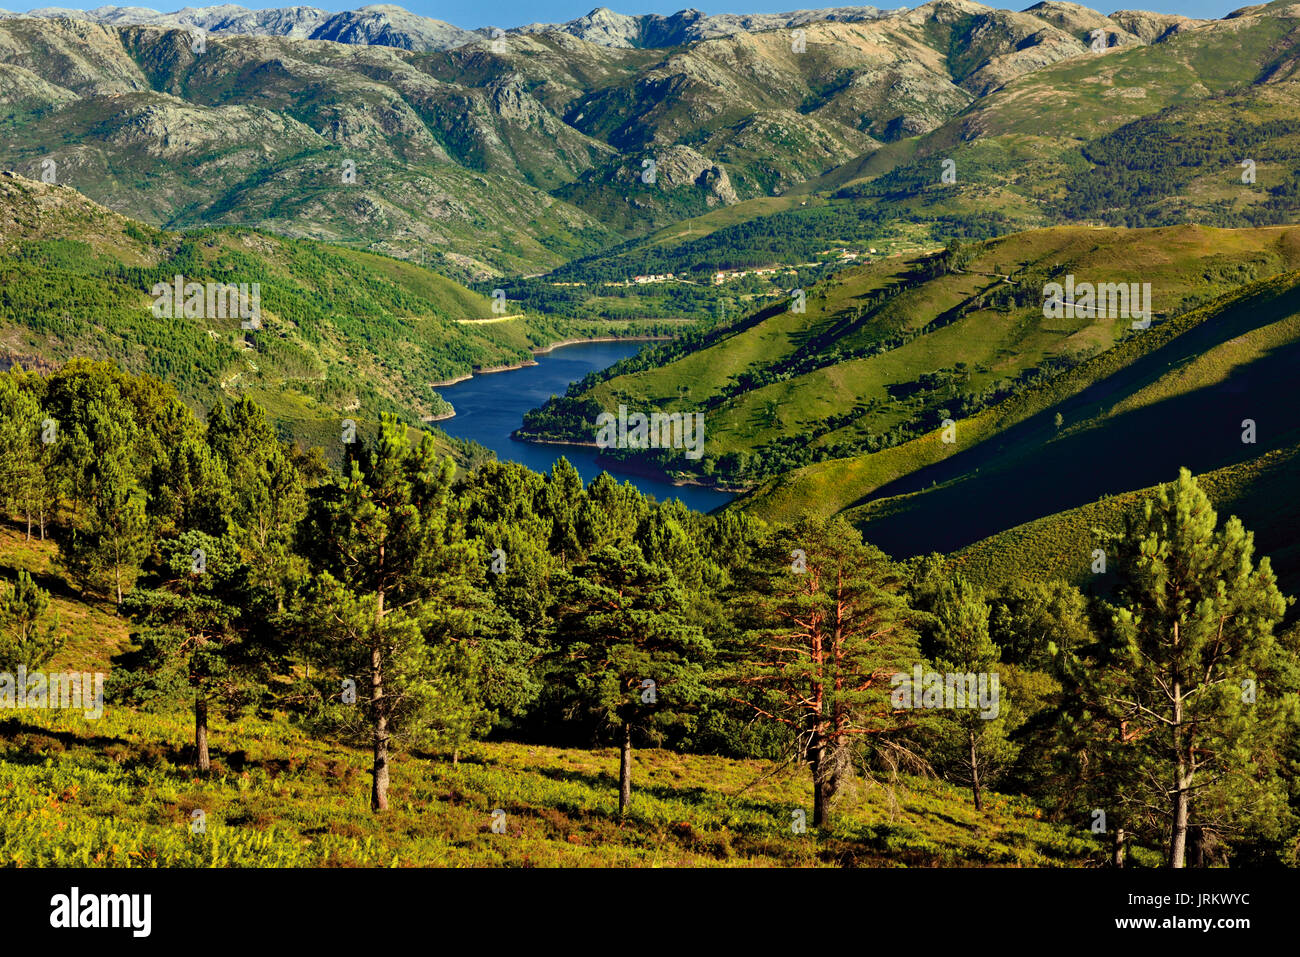 Vue paysage avec des montagnes, des collines vertes et un barrage surroundet par des pins Banque D'Images